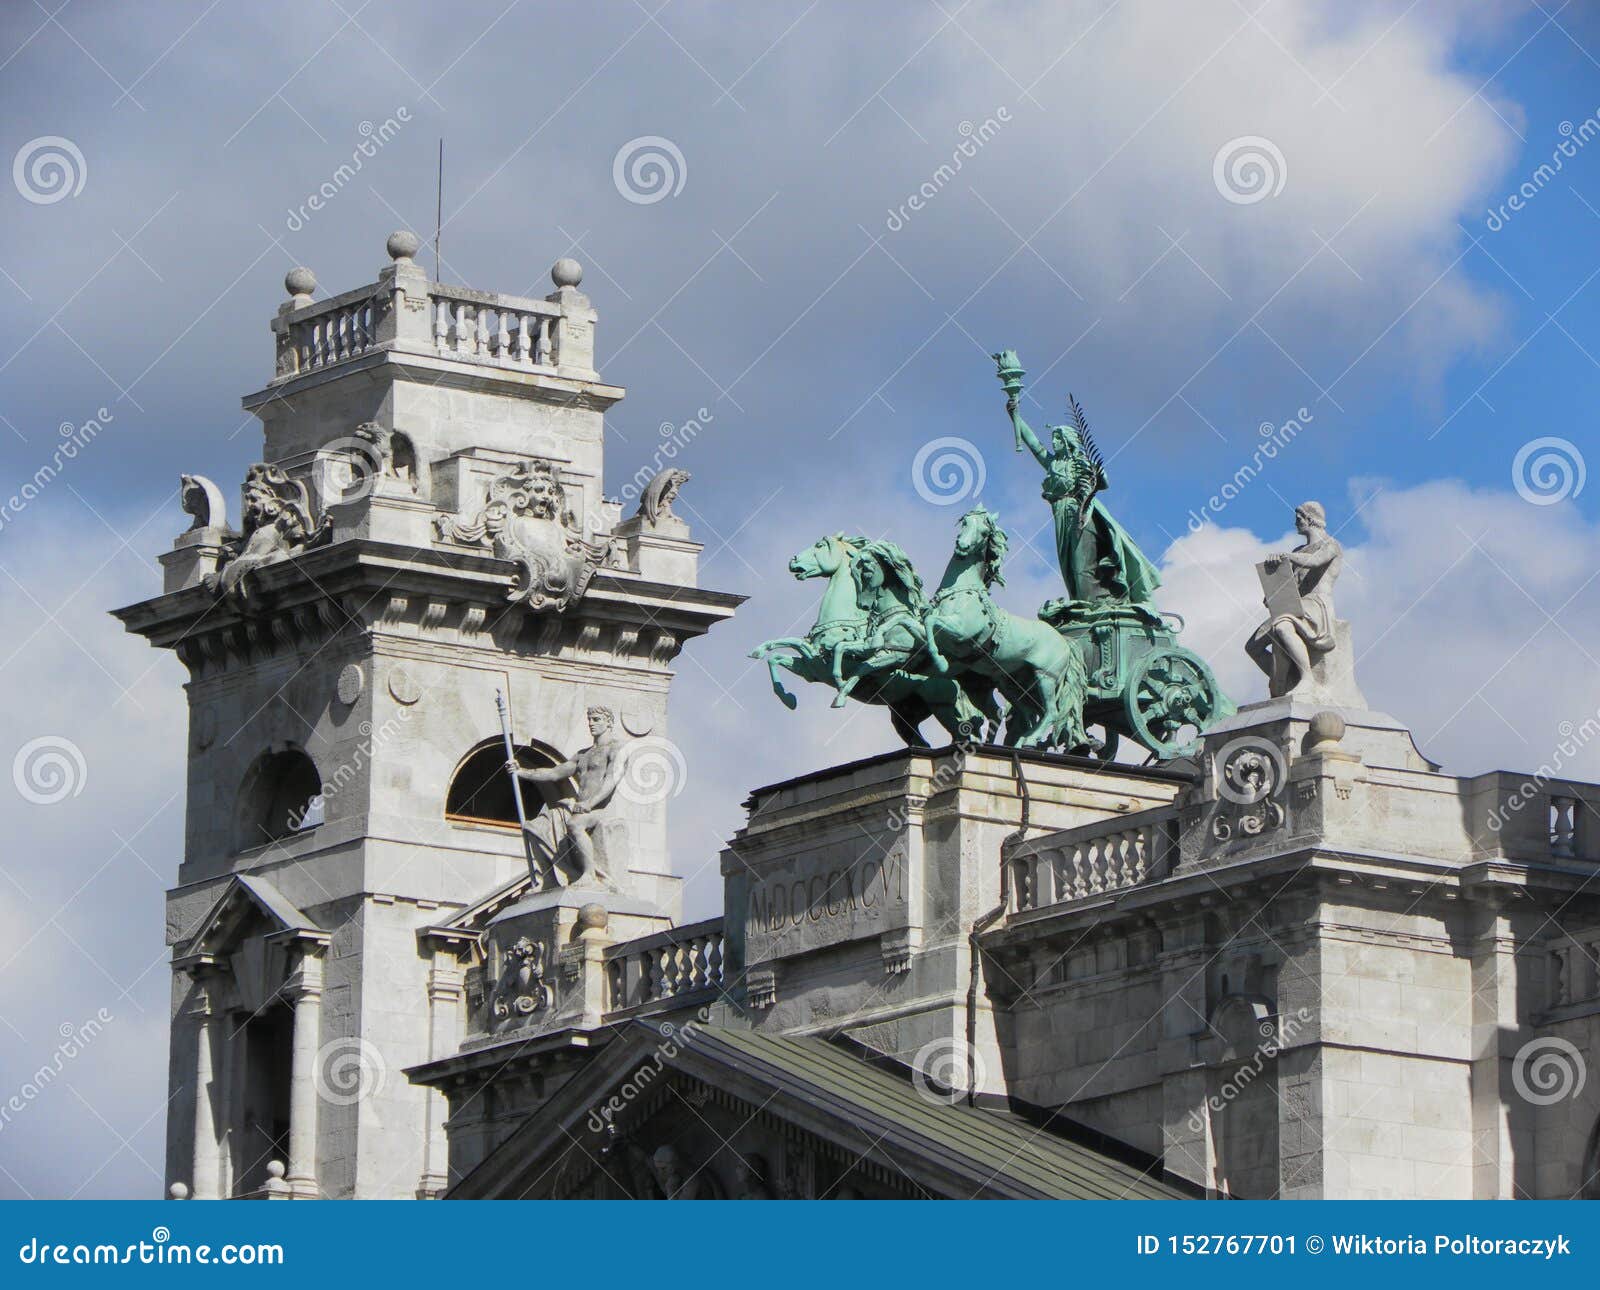 Blokkenwagenstandbeeld met Nike Boedapest, Hongarije. Blokkenwagenstandbeeld met Nike Boedapest, Digitale camera, blokkenwagen, standbeeld, Boedapest, Hongarije, de bouw, architectuur, nike, hemel, monument, engel, pijler, sightseeing, neo-Romaanse vakantie,